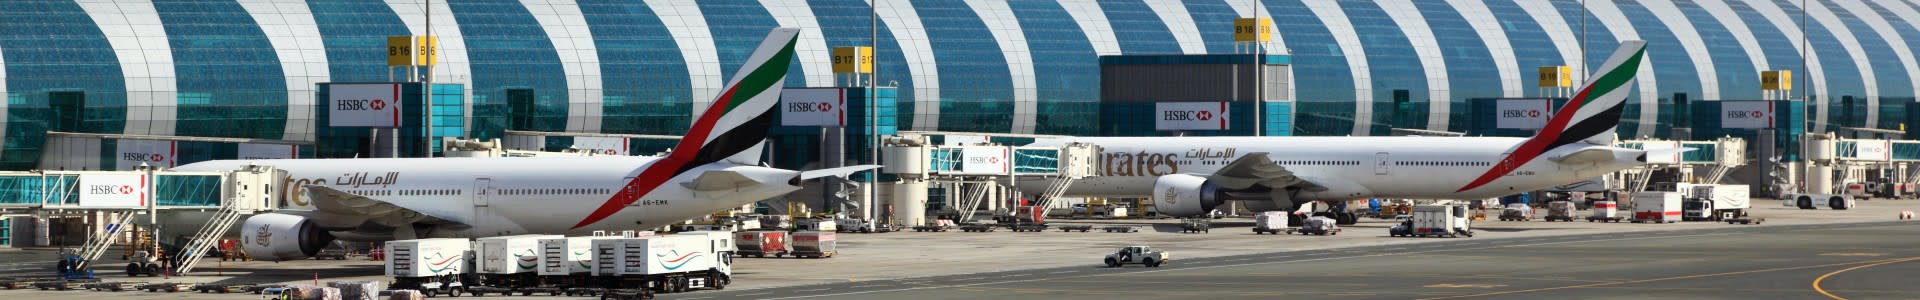 Dubai Airport, 2 Emirates airplanes